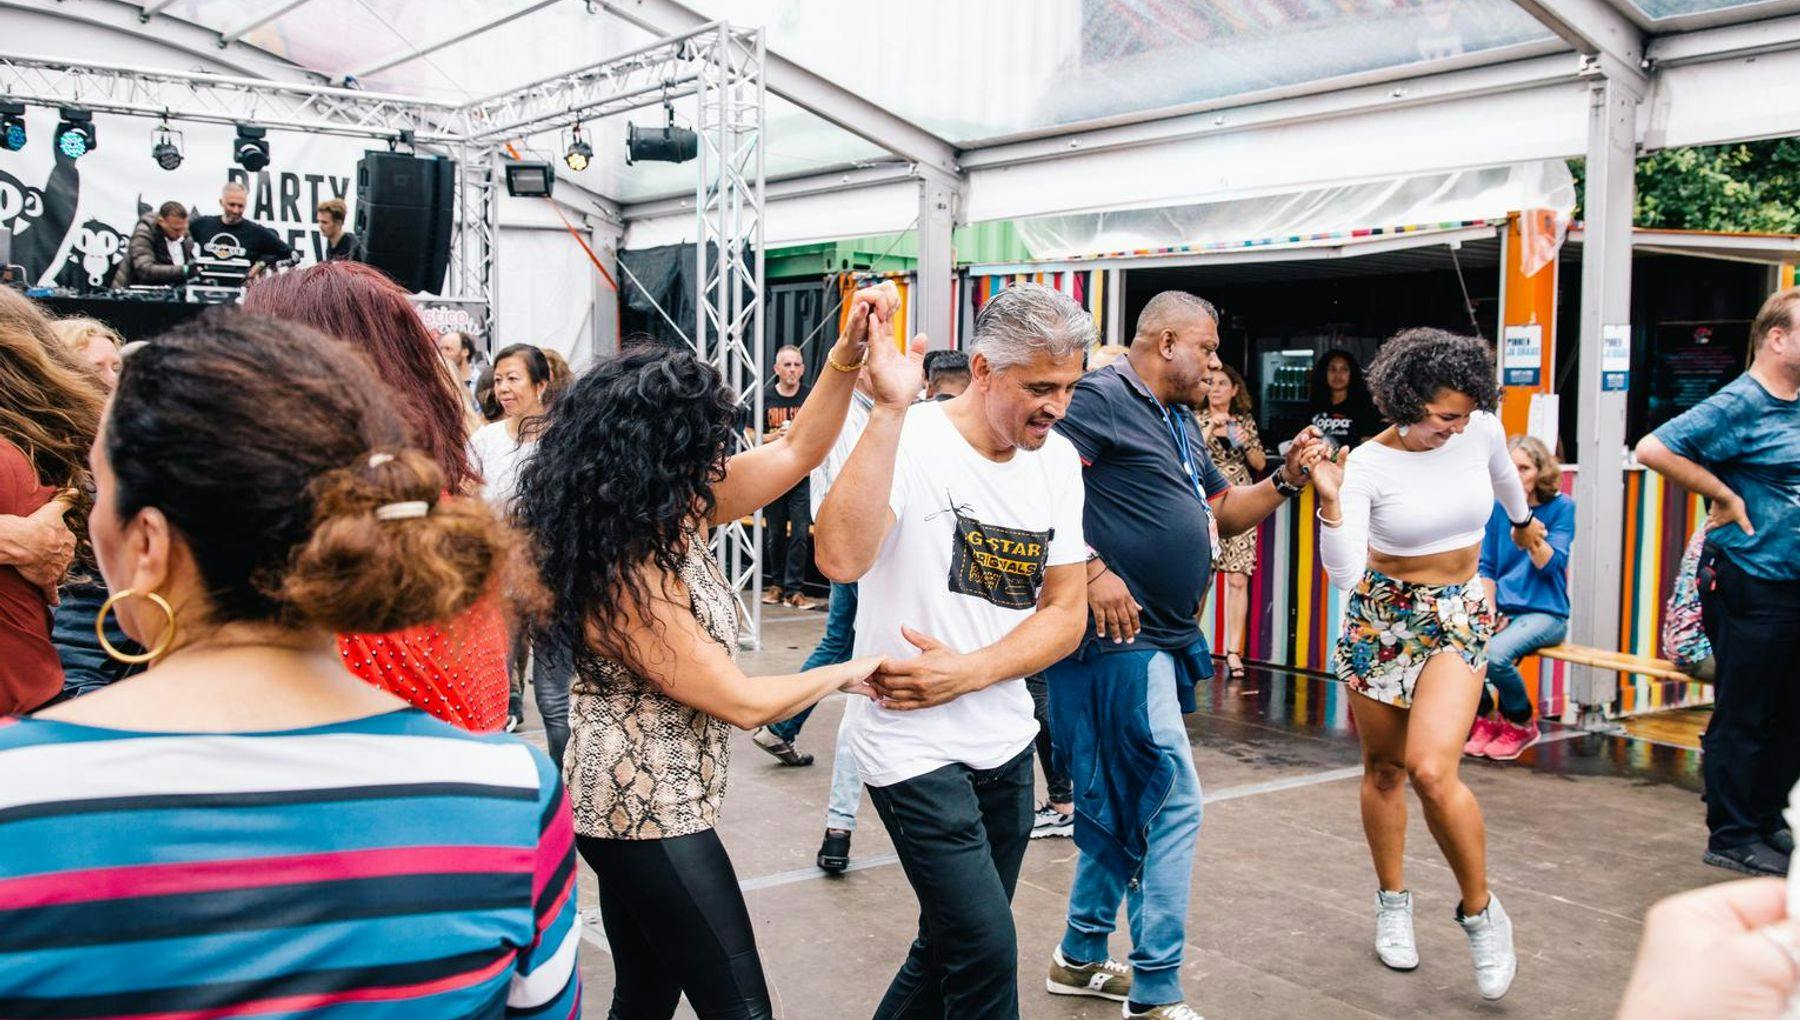 People dancing at Kwaku festival